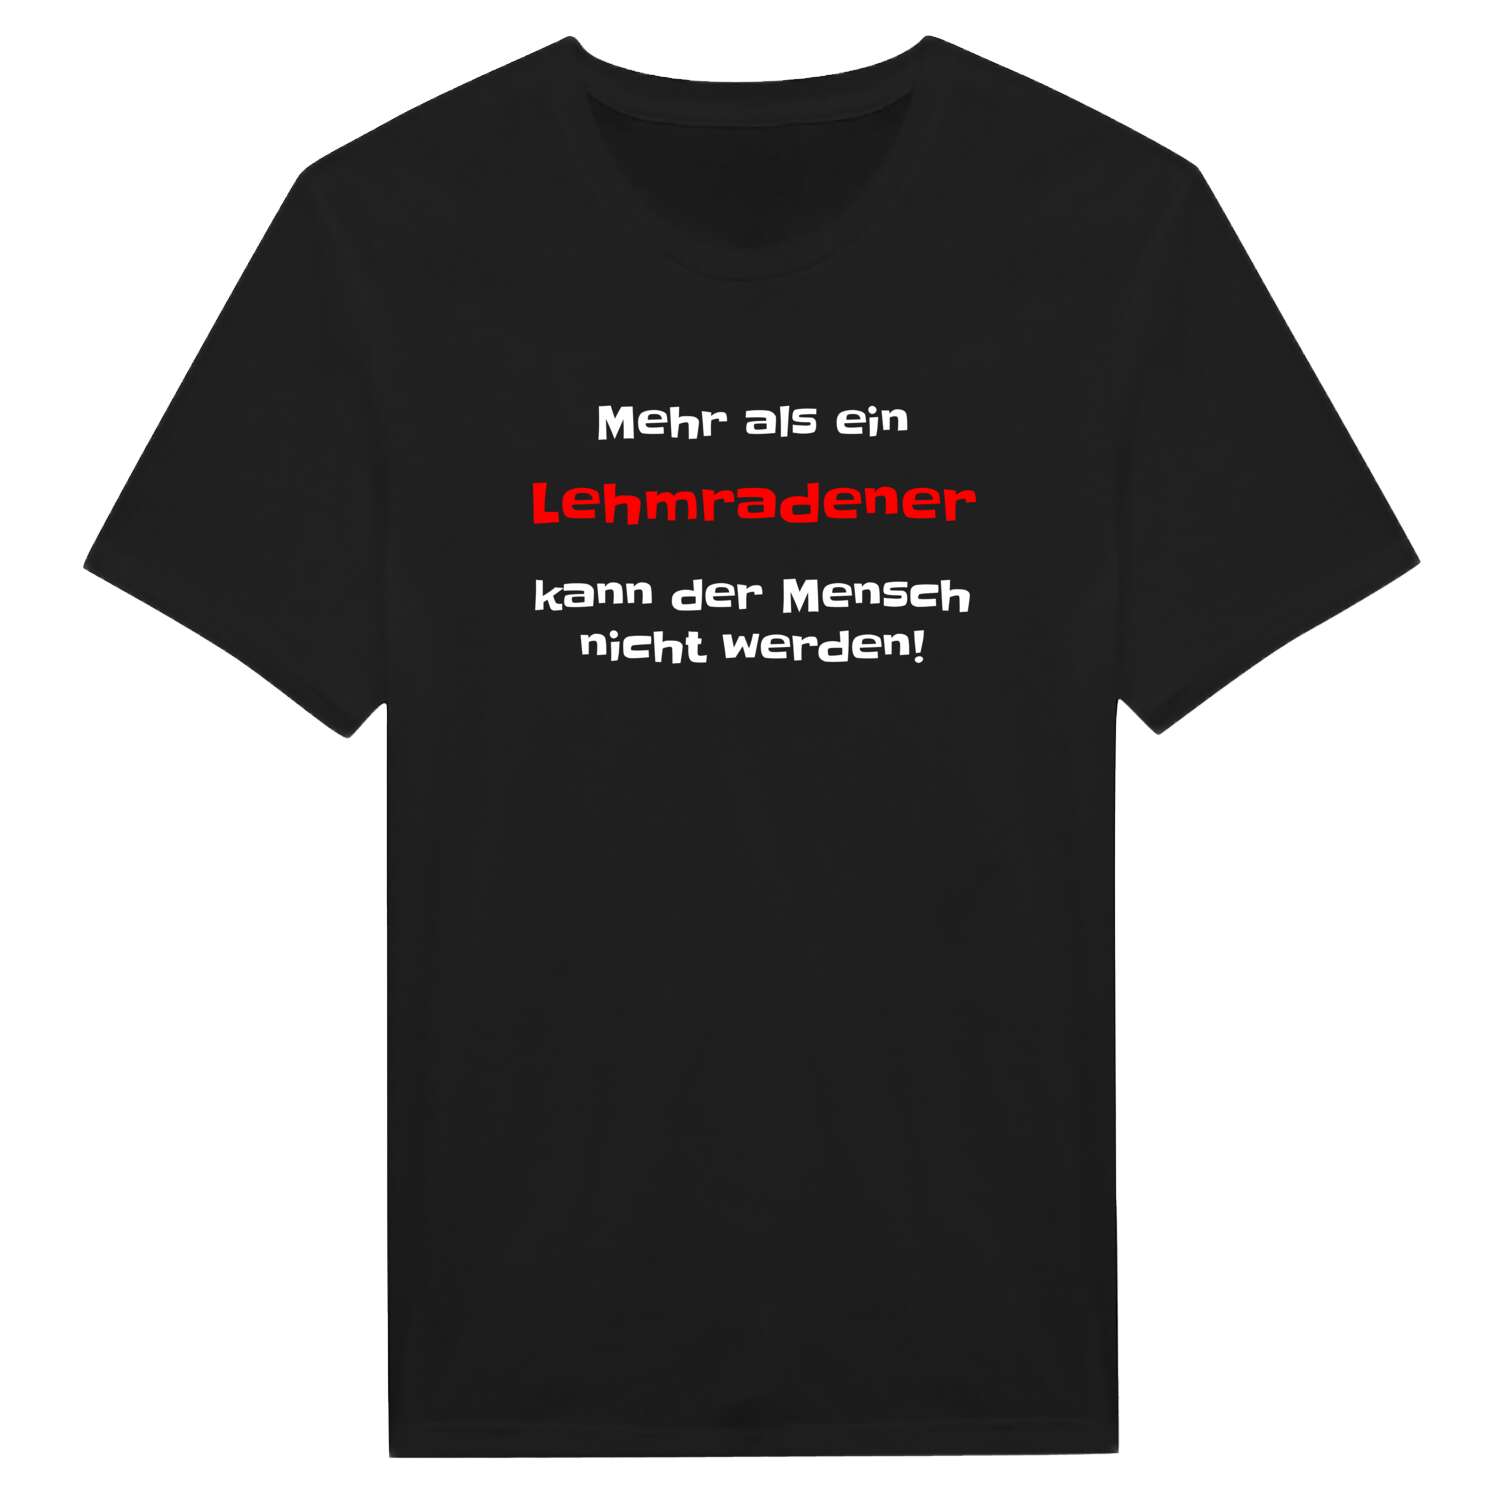 Lehmrade T-Shirt »Mehr als ein«